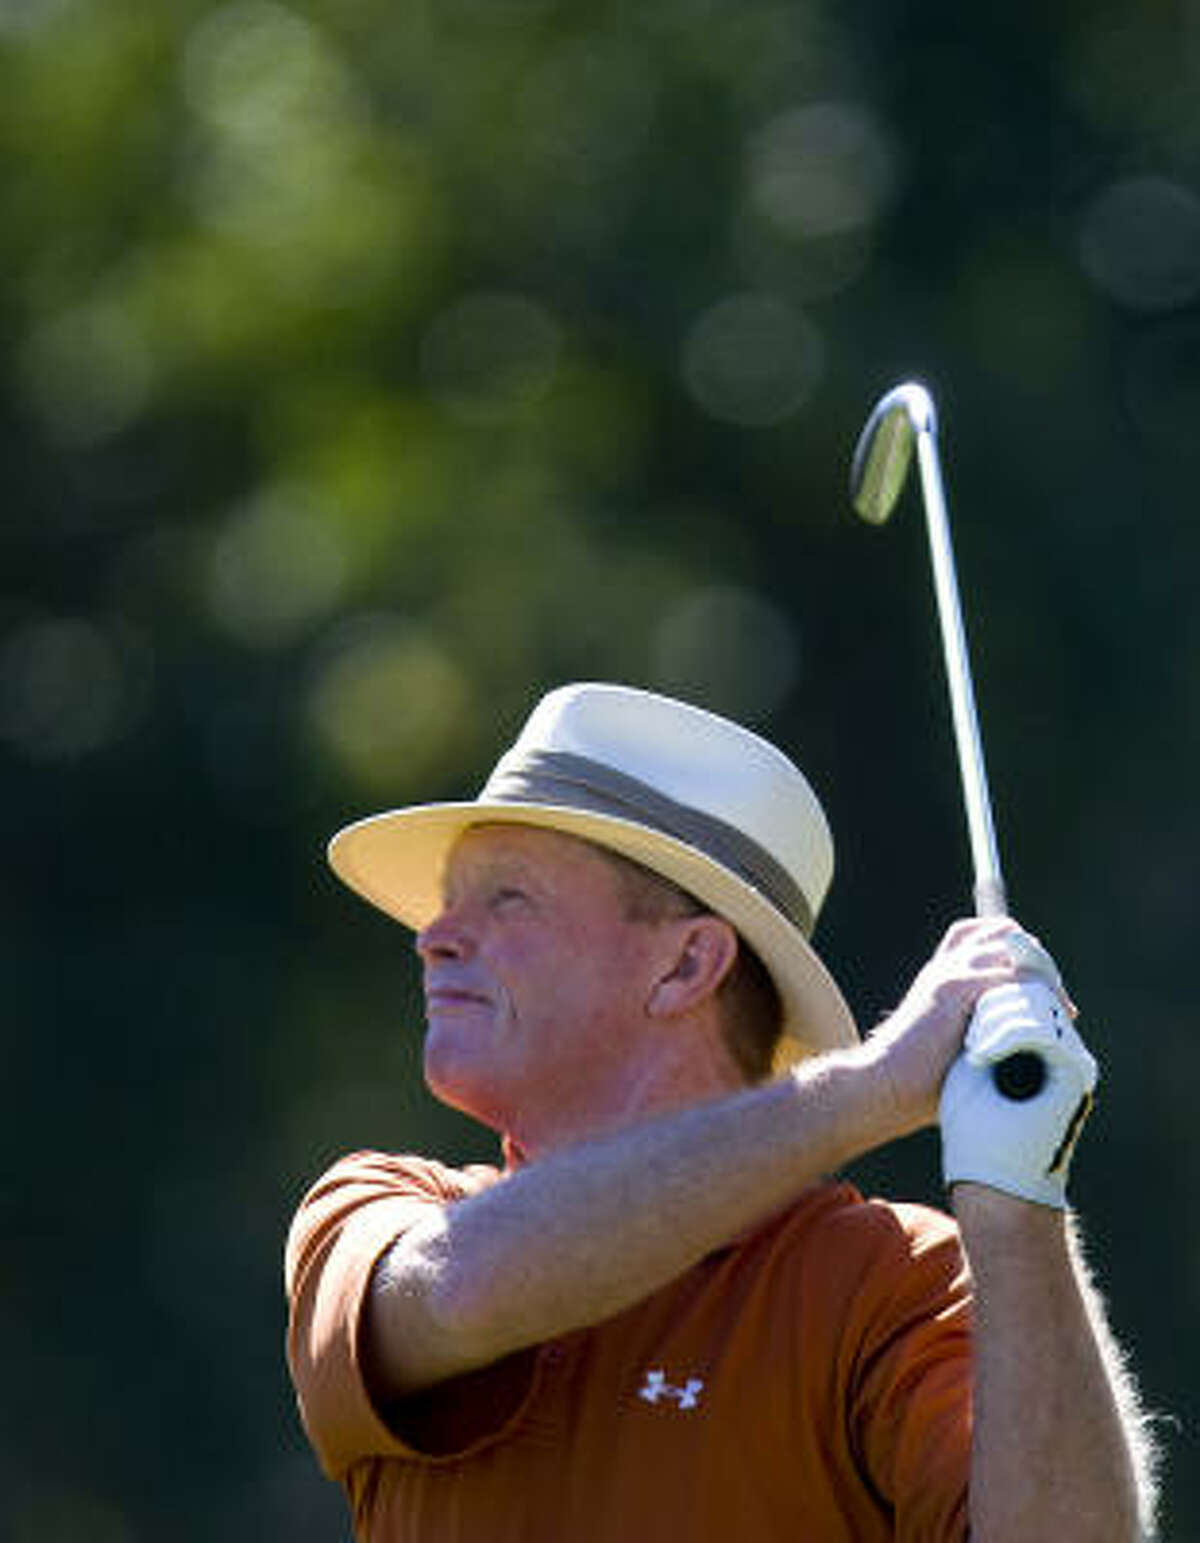 Former University of Texas golfer Tom Kite swings for the green.